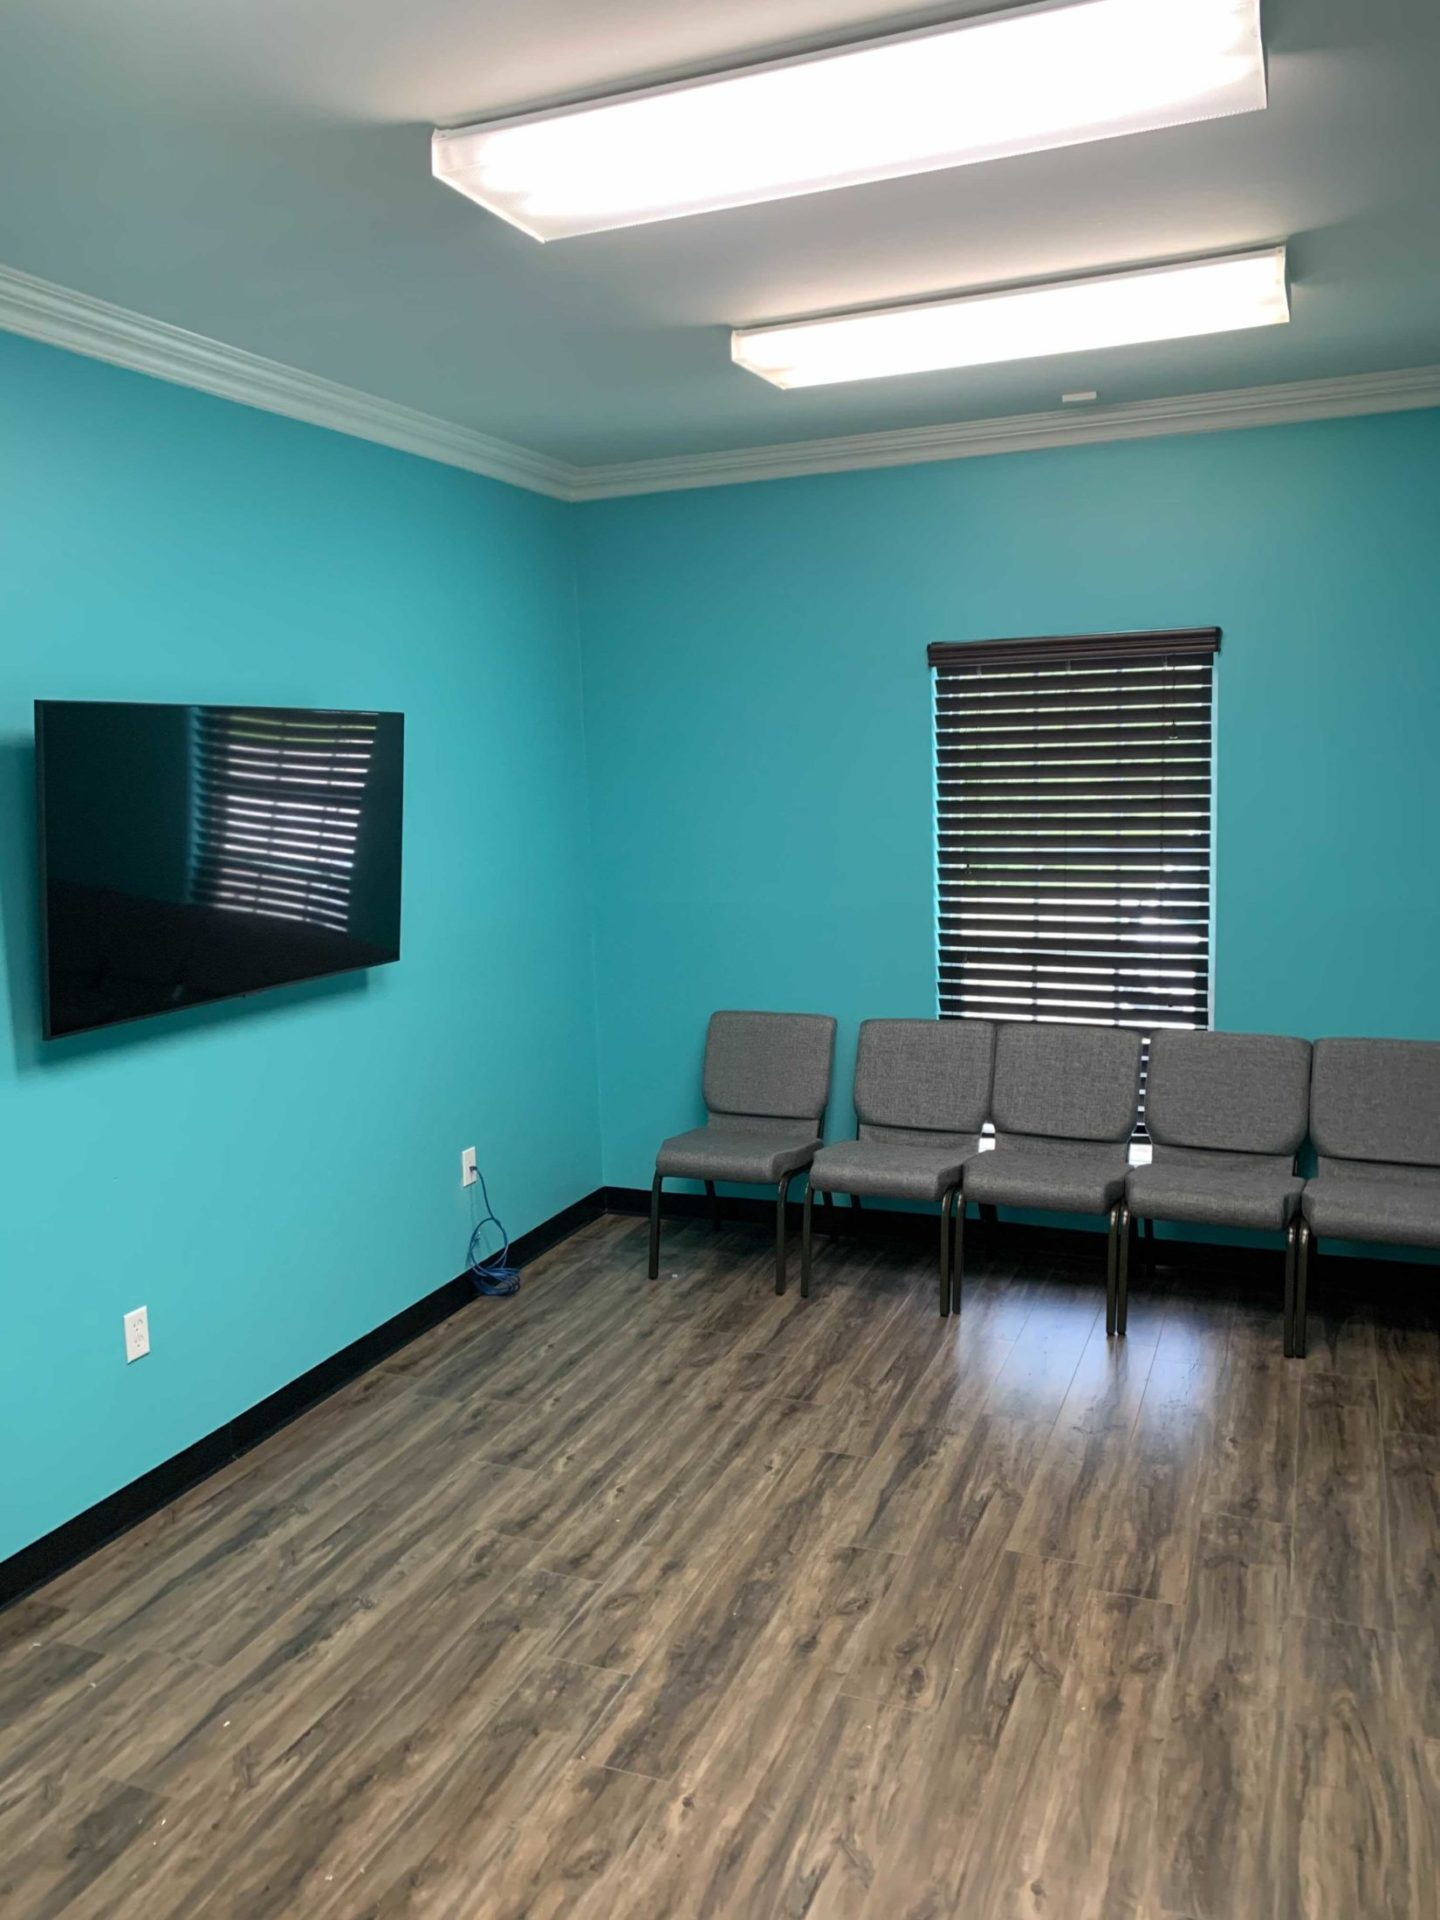 Eleanor Health clinic lobby in Baton Rouge, Louisiana